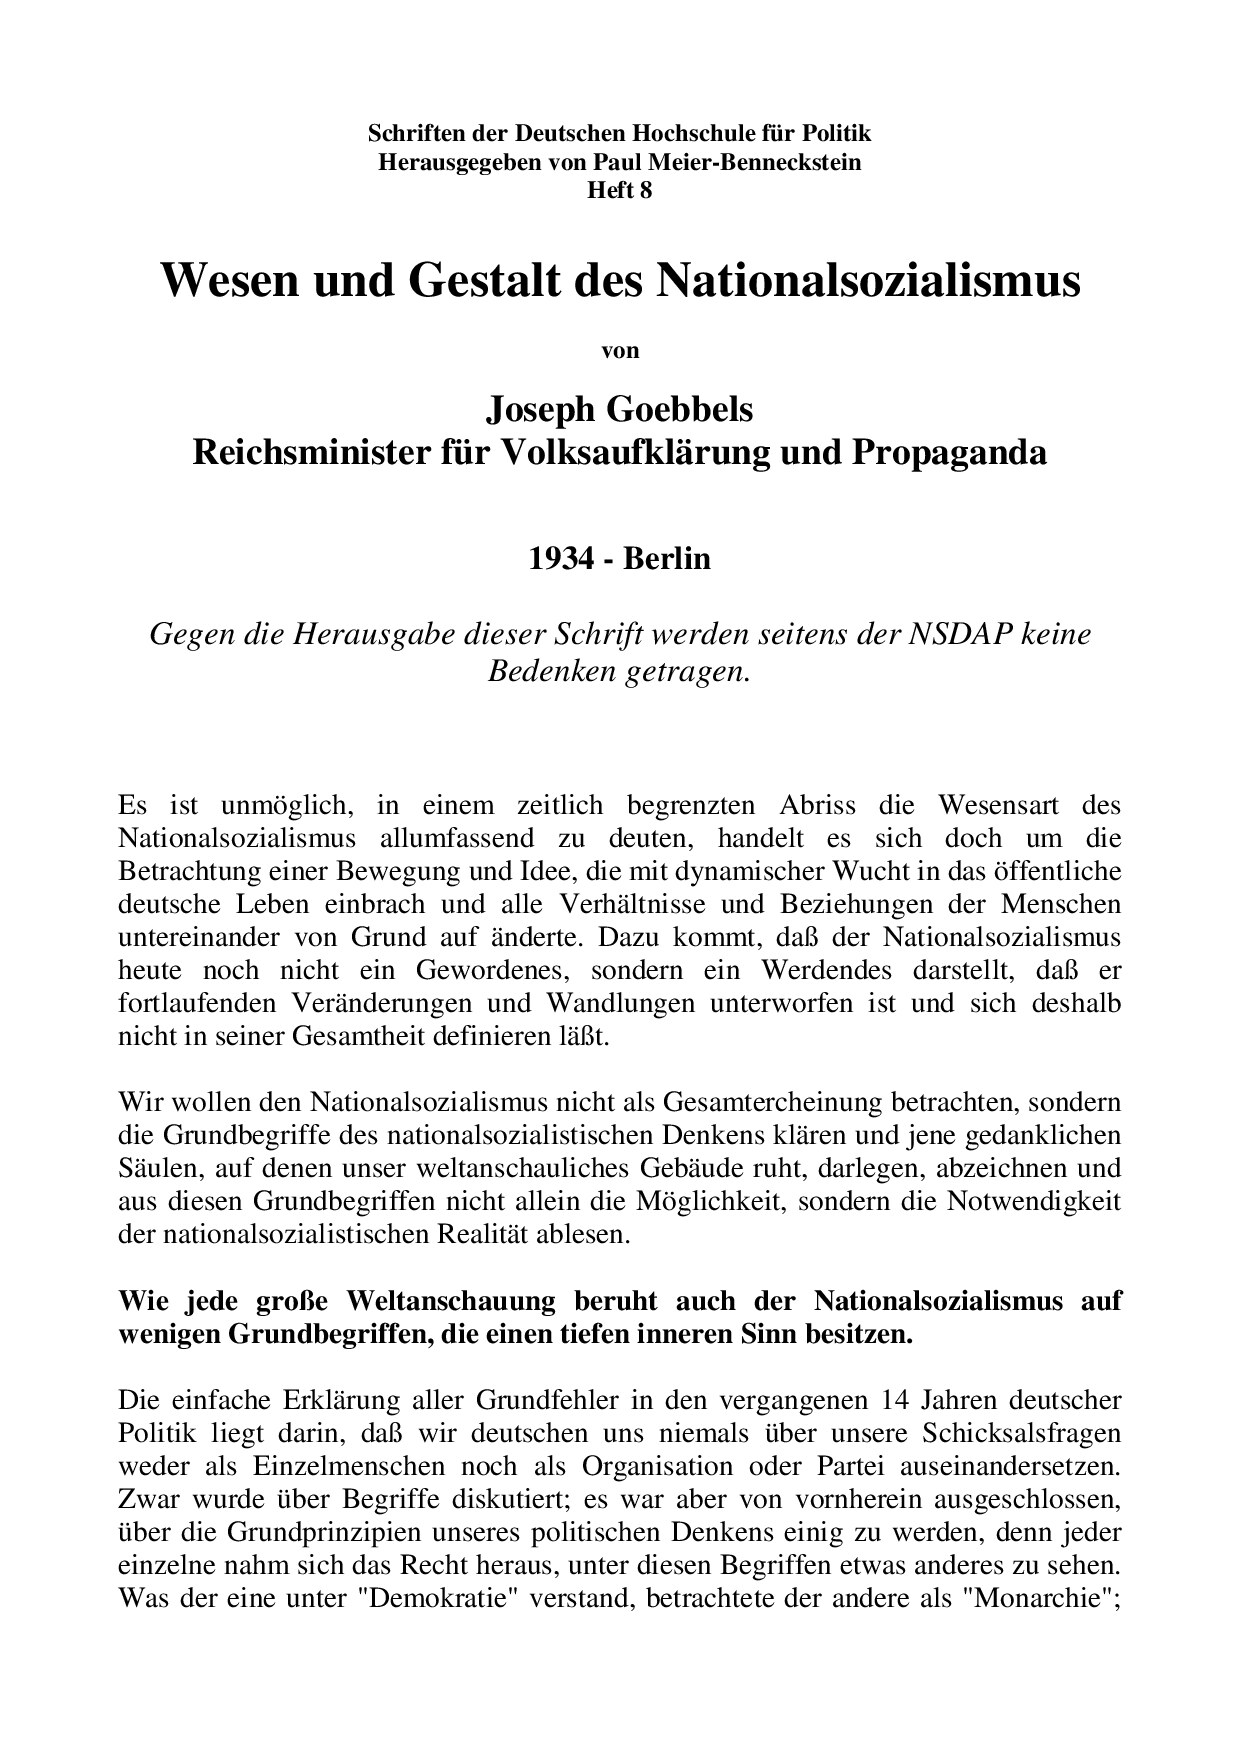 Wesen und Gestalt des Nationalsozialismus